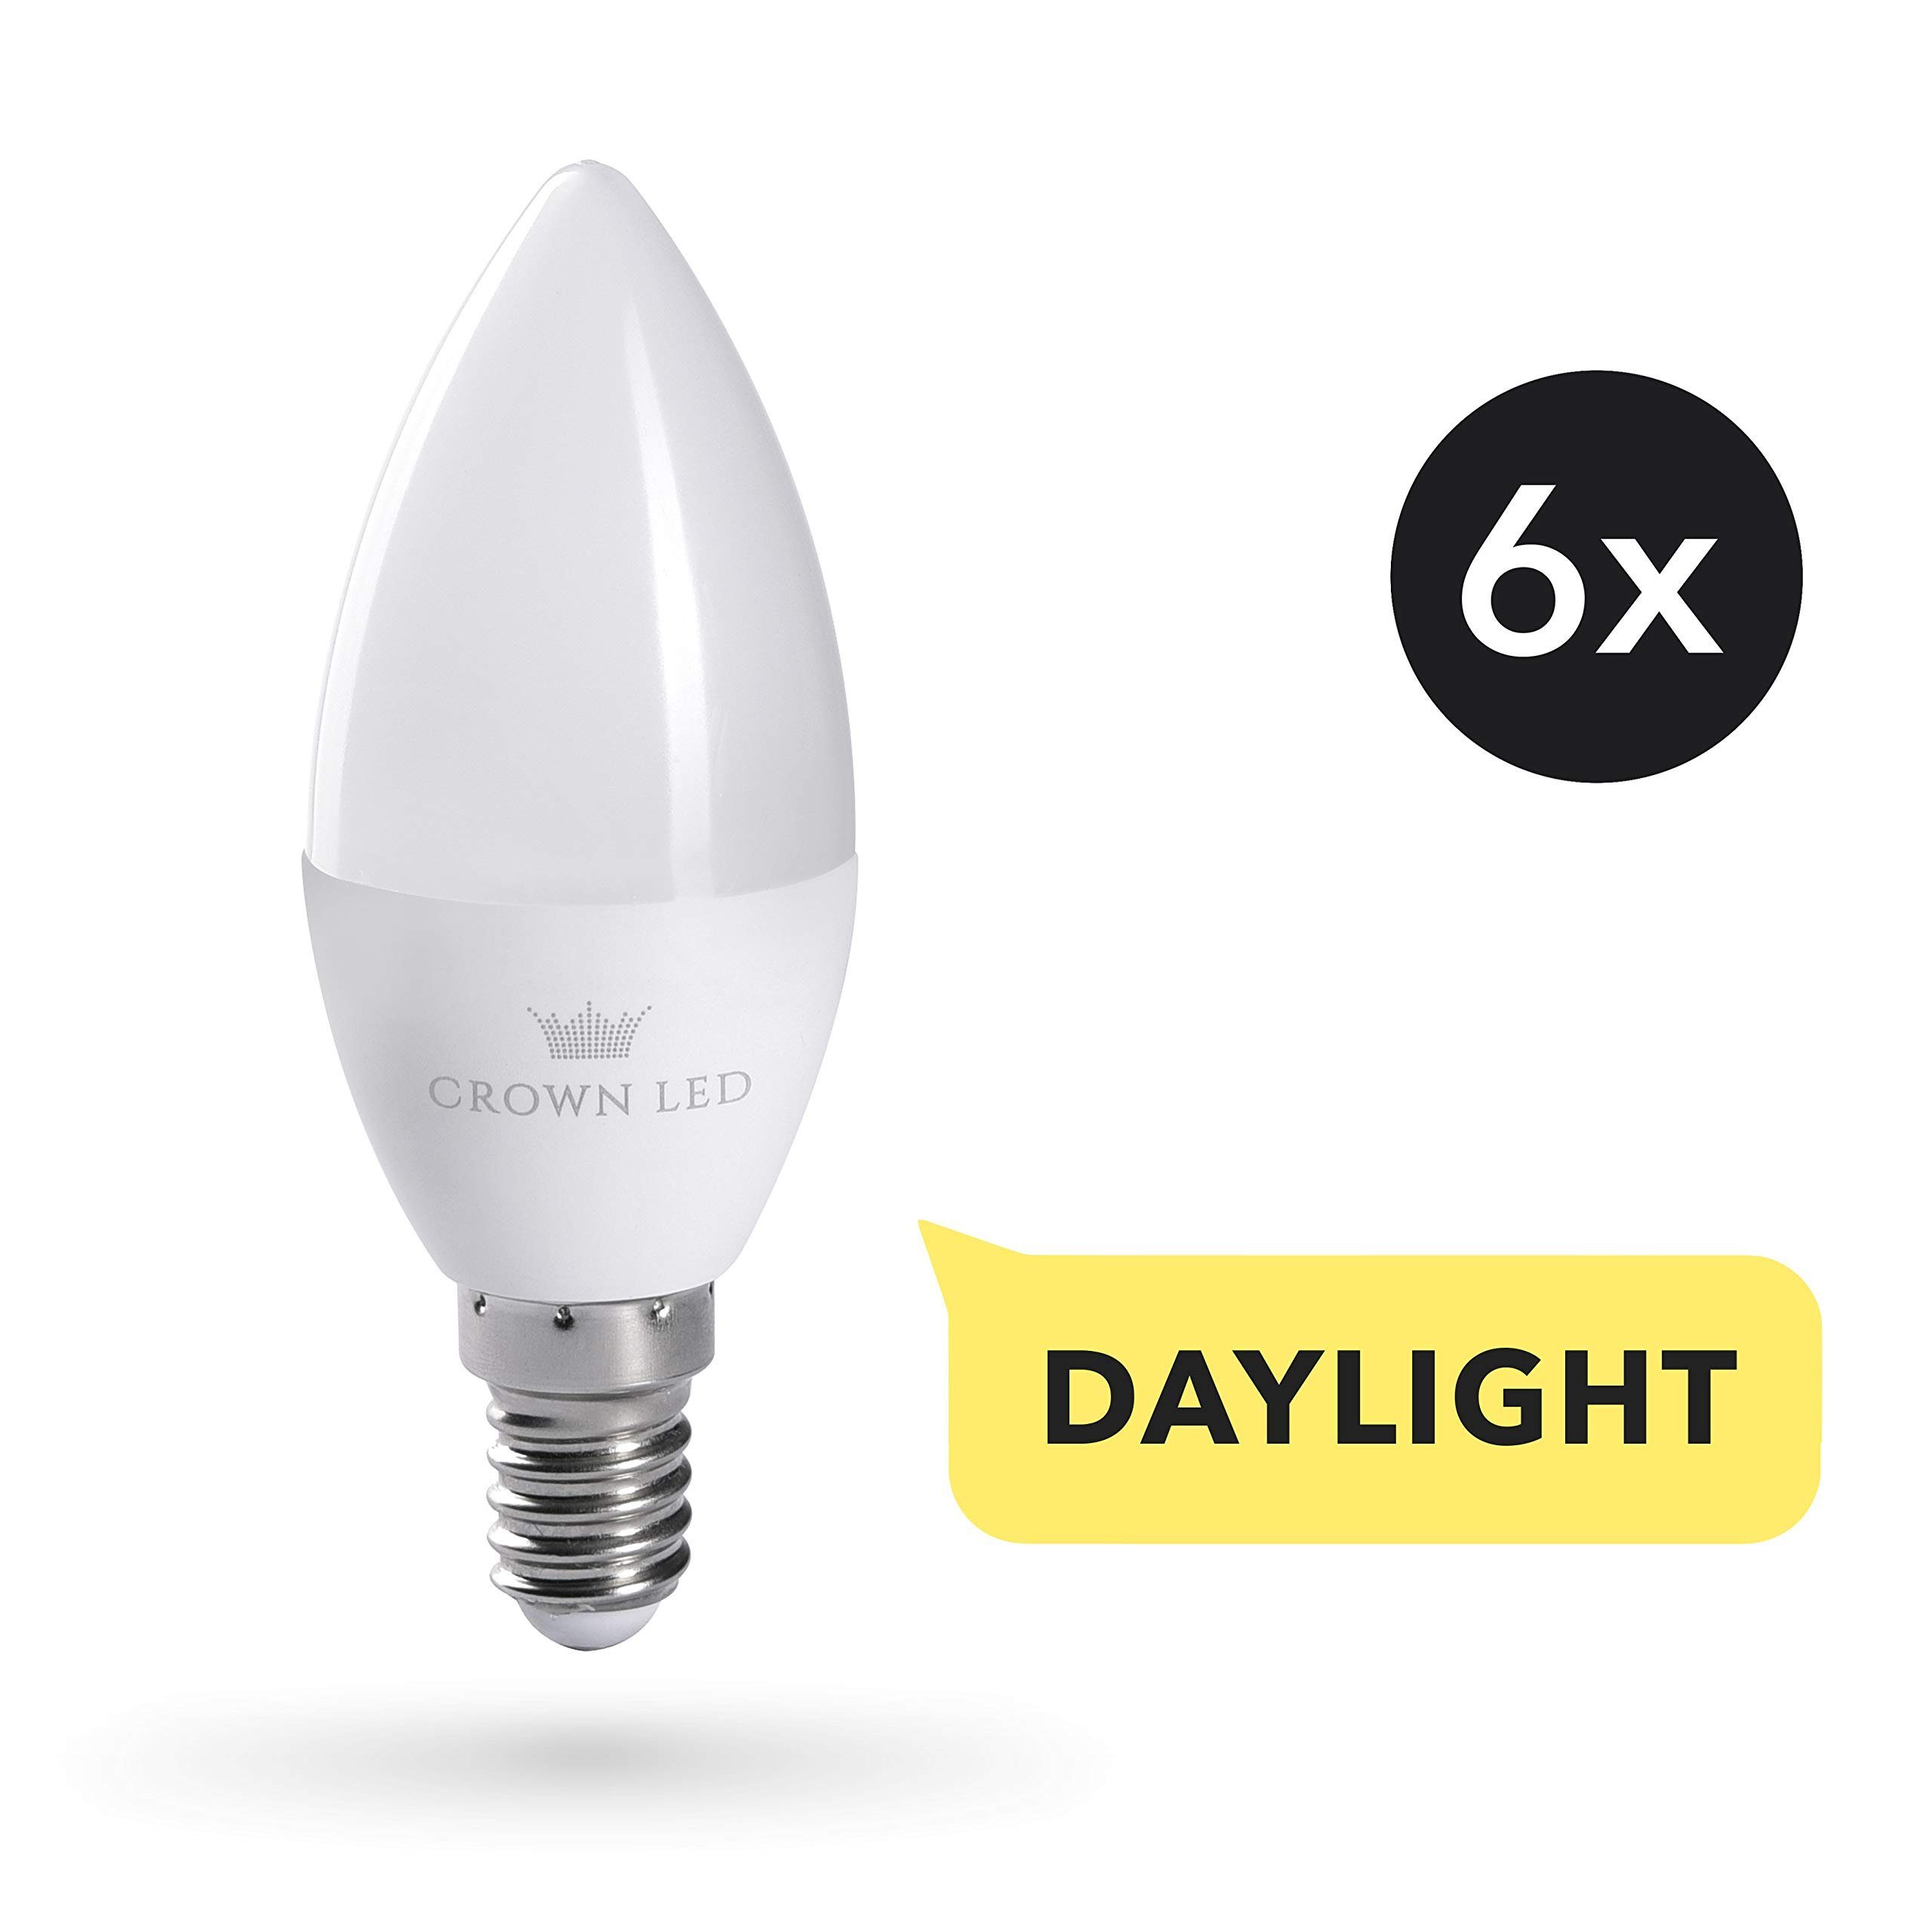 Crown LED Tageslichtlampe 6x LED Glühbirne Vollspektrum, 10.000 LUX, E14,  7W, 6Xklassisch